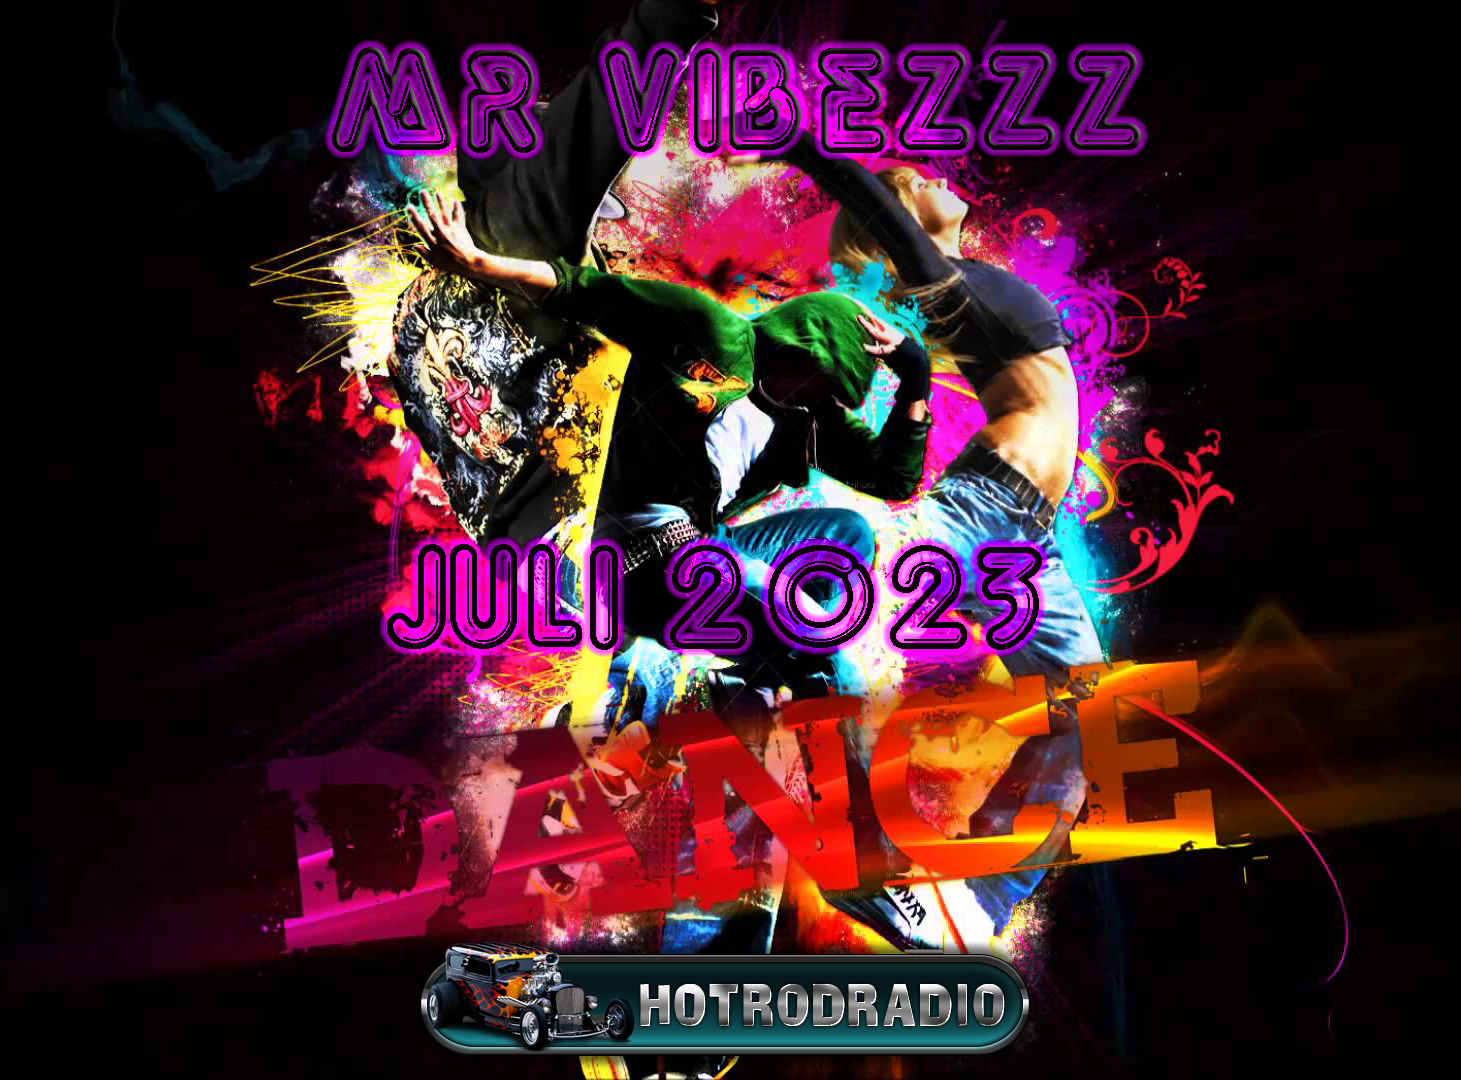 Hotrod Radio Mr Vibezzz Dance Juli 2023